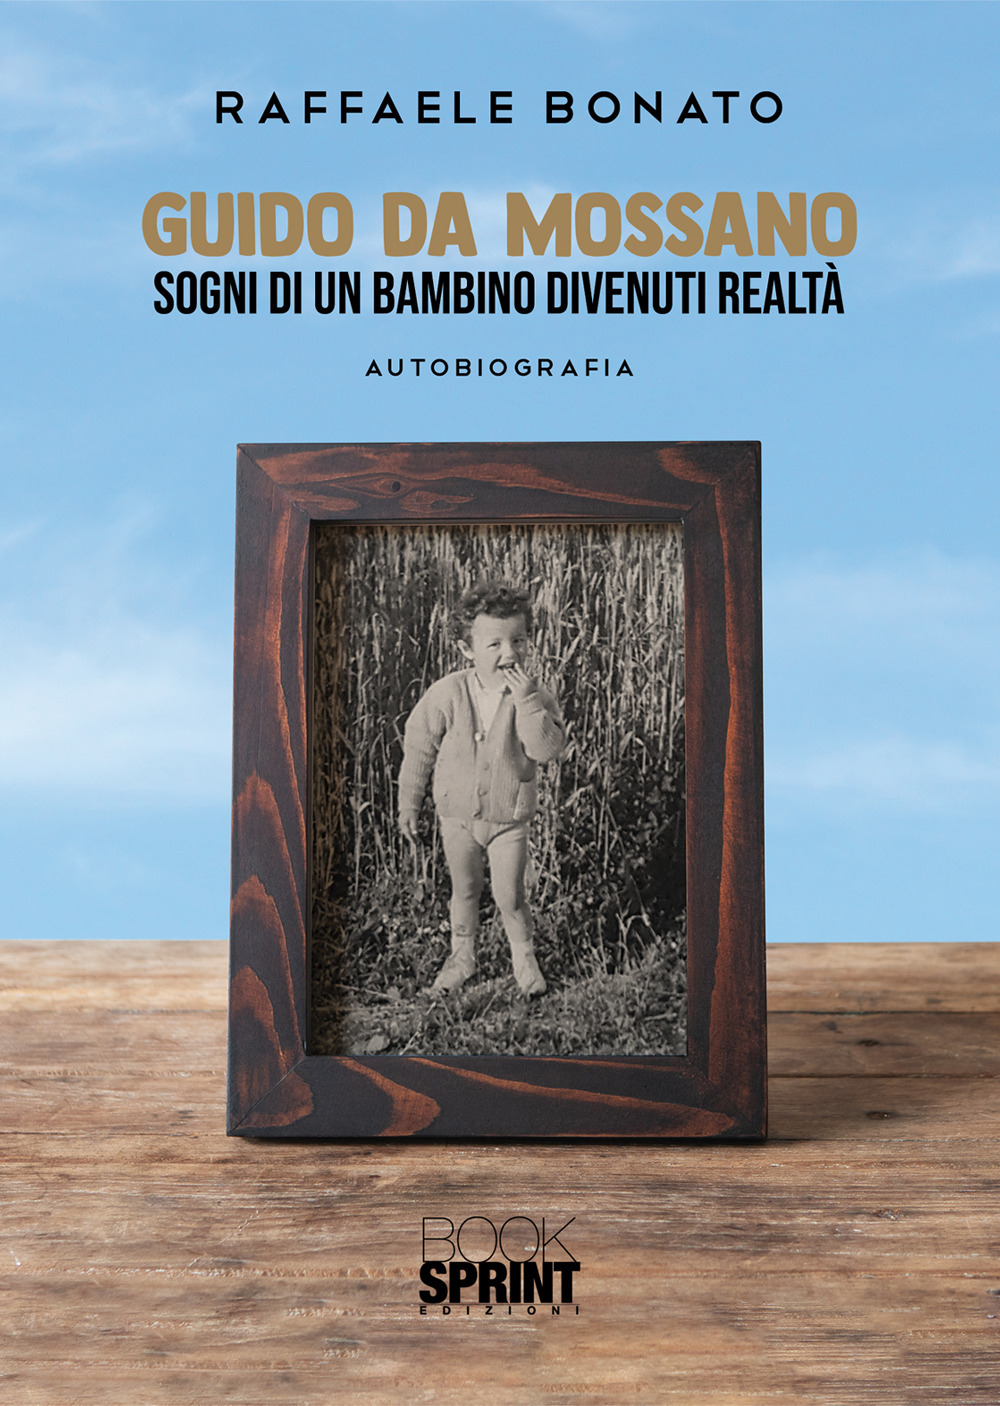 Libri Bonato Raffaele - Guido Da Mossano NUOVO SIGILLATO, EDIZIONE DEL 10/02/2021 SUBITO DISPONIBILE